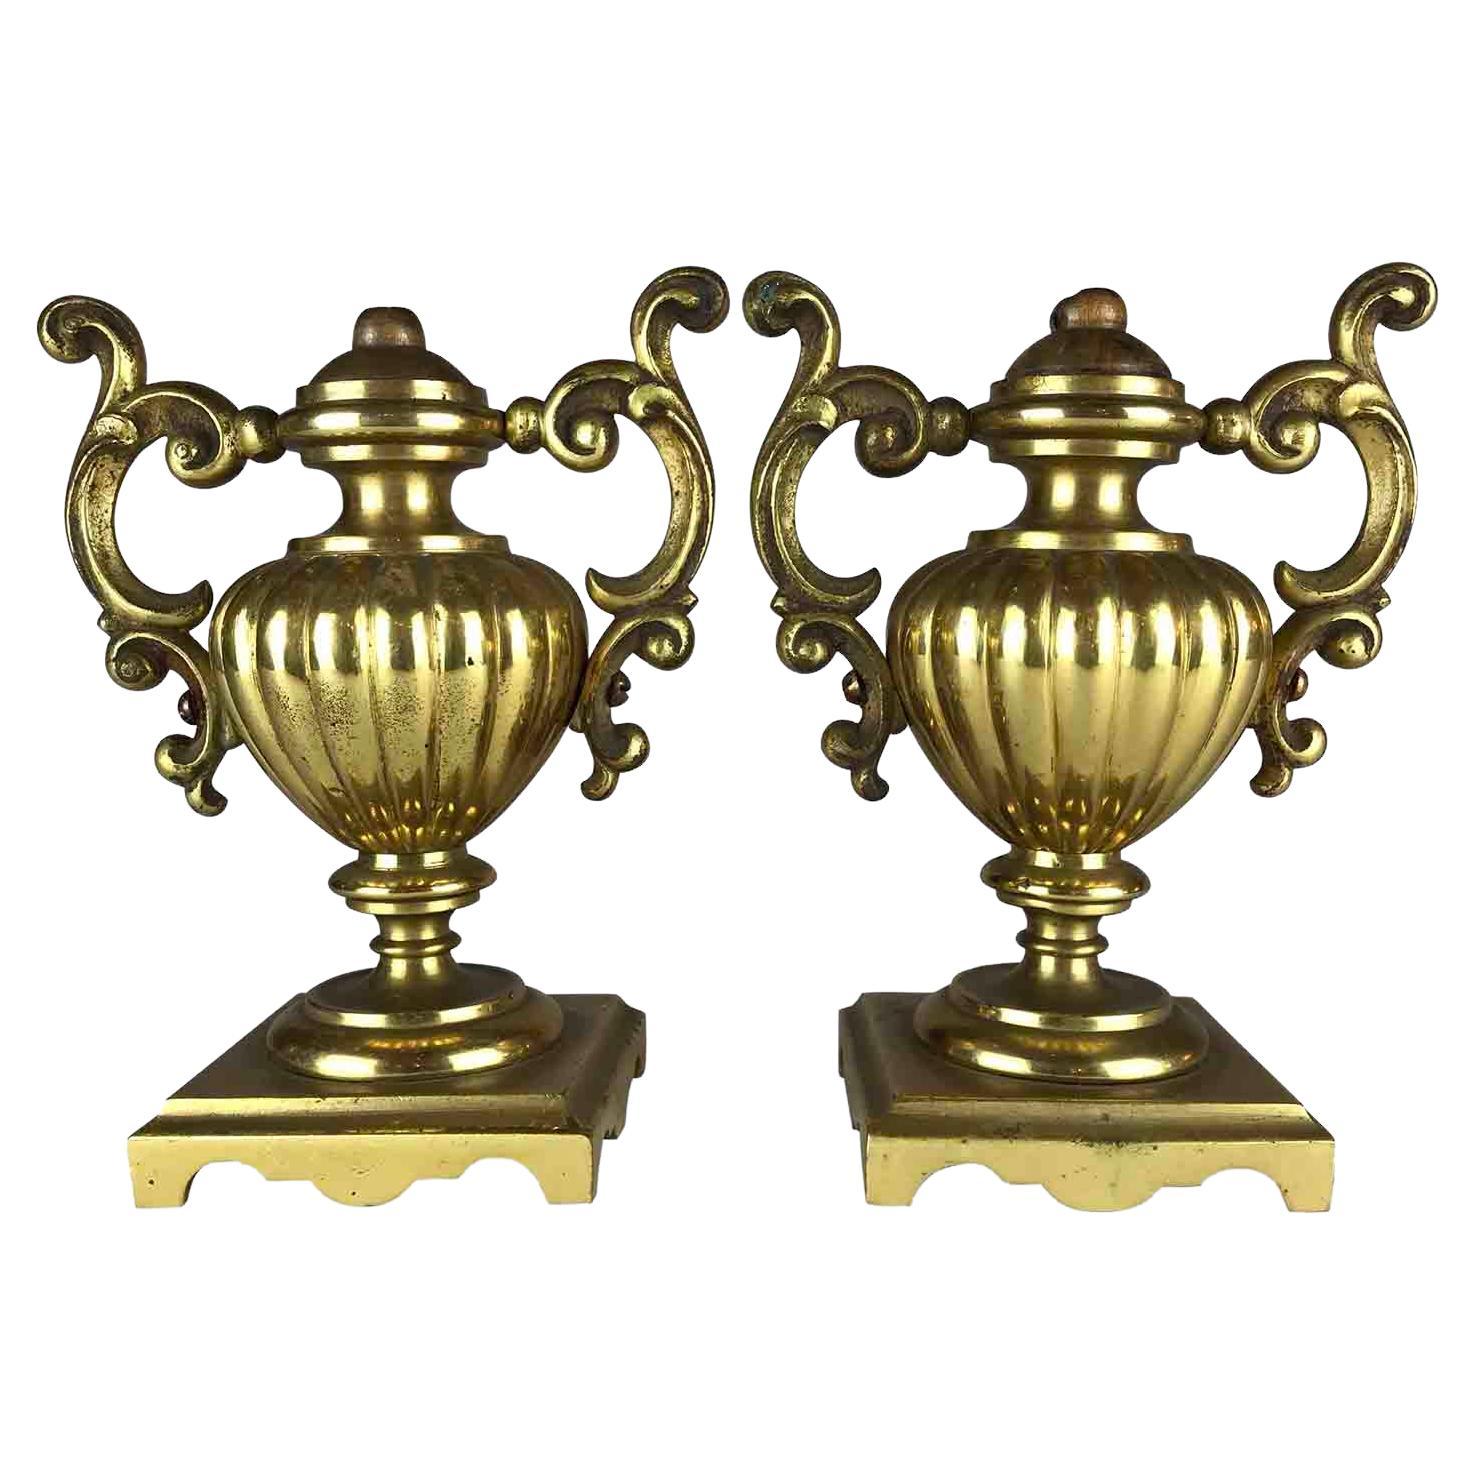 Paire de vases urne en bronze doré néoclassique italien, vers les années 1820